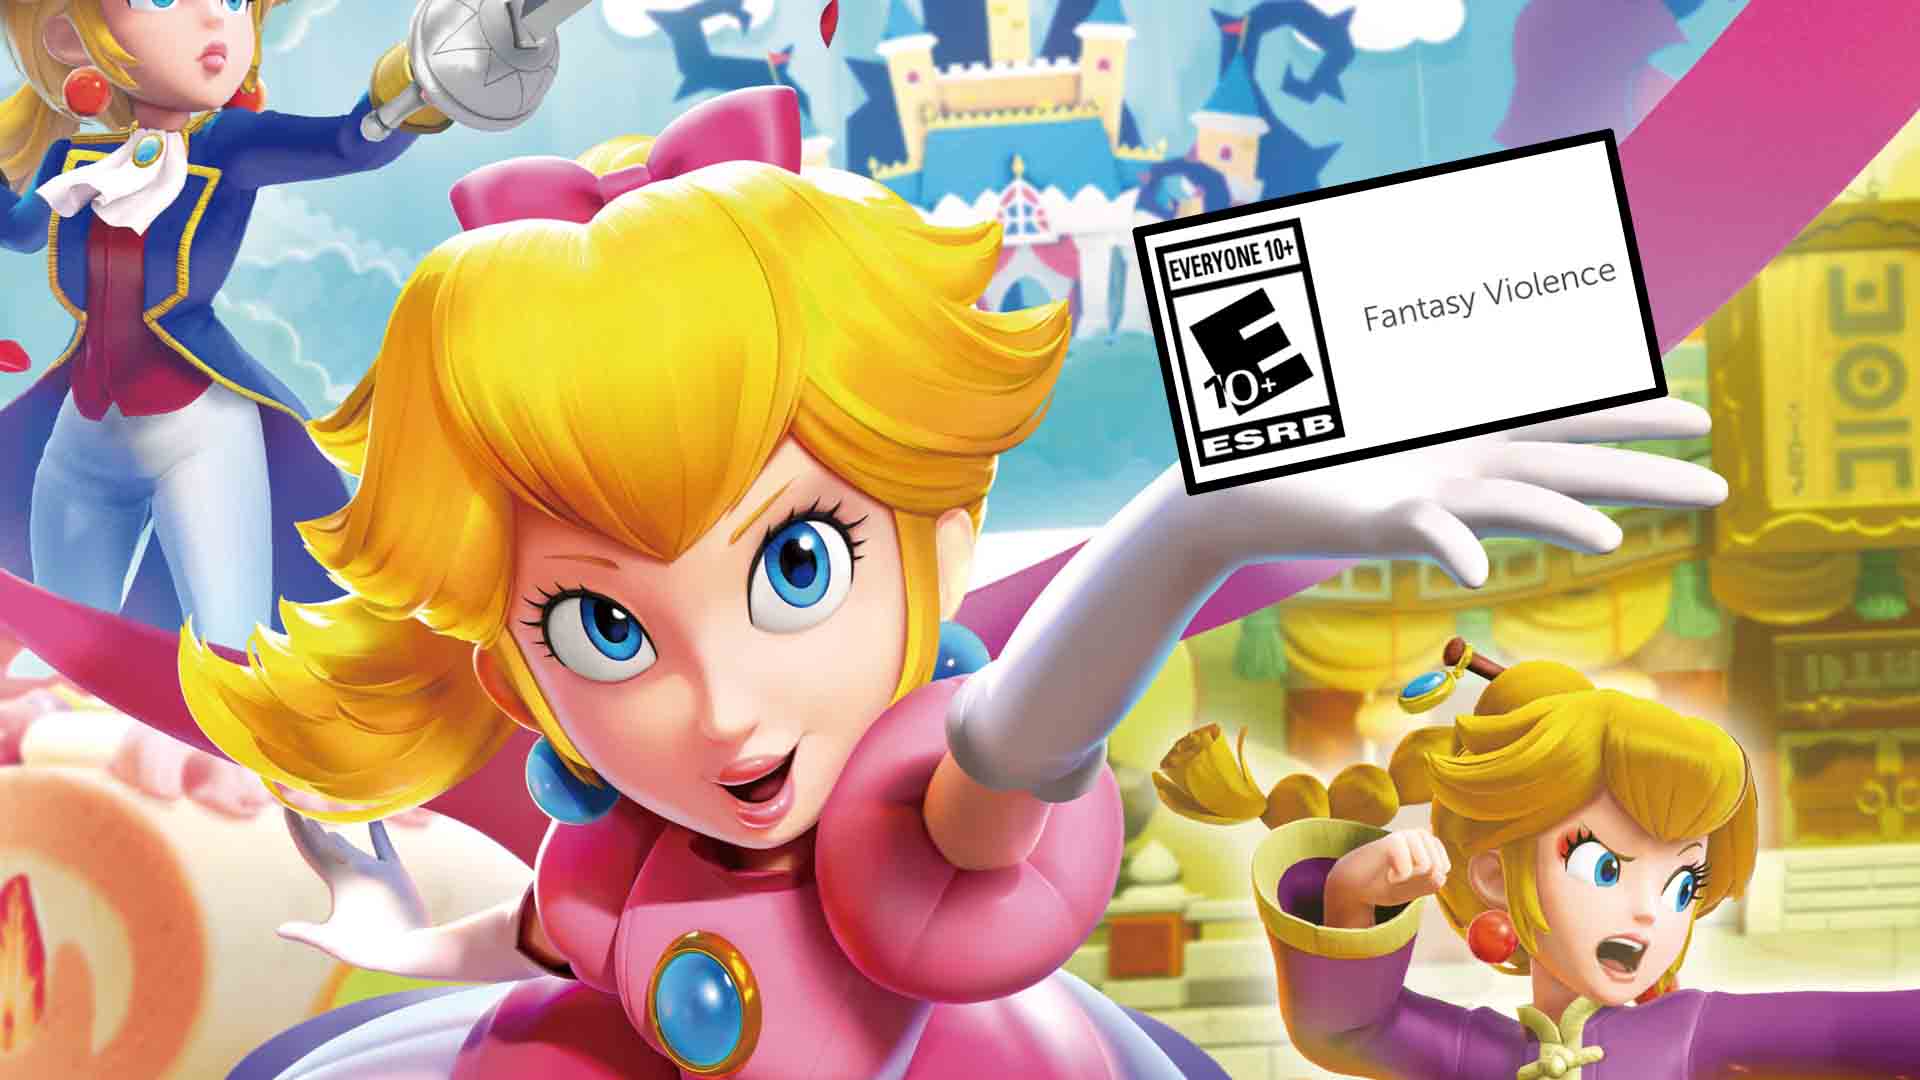 Princess Peach: Showtime! - Nintendo Direct 9.14.2023 